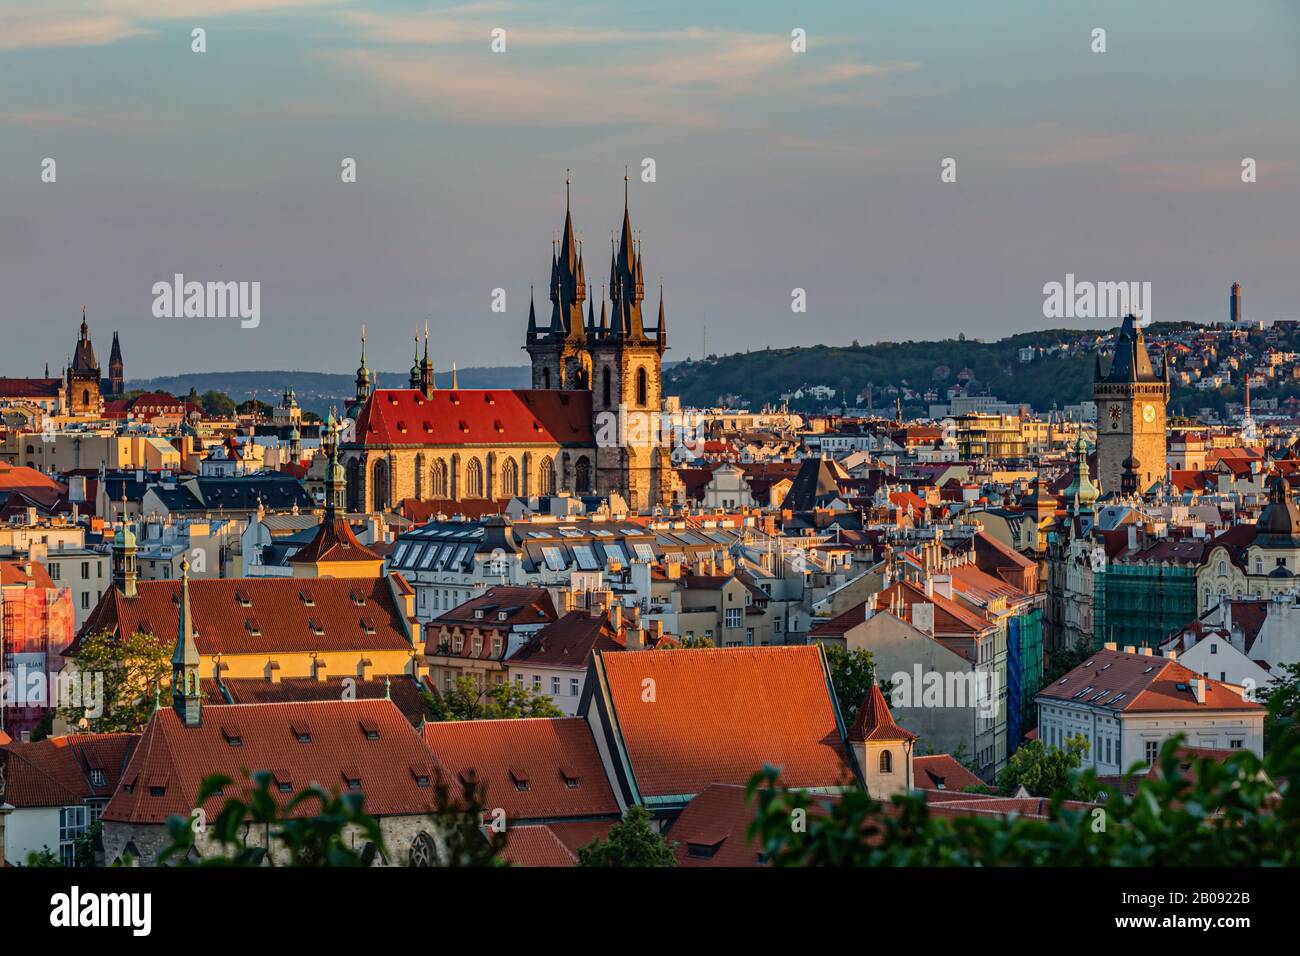 Praga / Repubblica Ceca - 23 maggio 2019: Vista panoramica del paesaggio urbano, della Cattedrale di Tyn e della Torre del Vecchio Municipio in una serata di sole primaverile. Cielo blu. Foto Stock